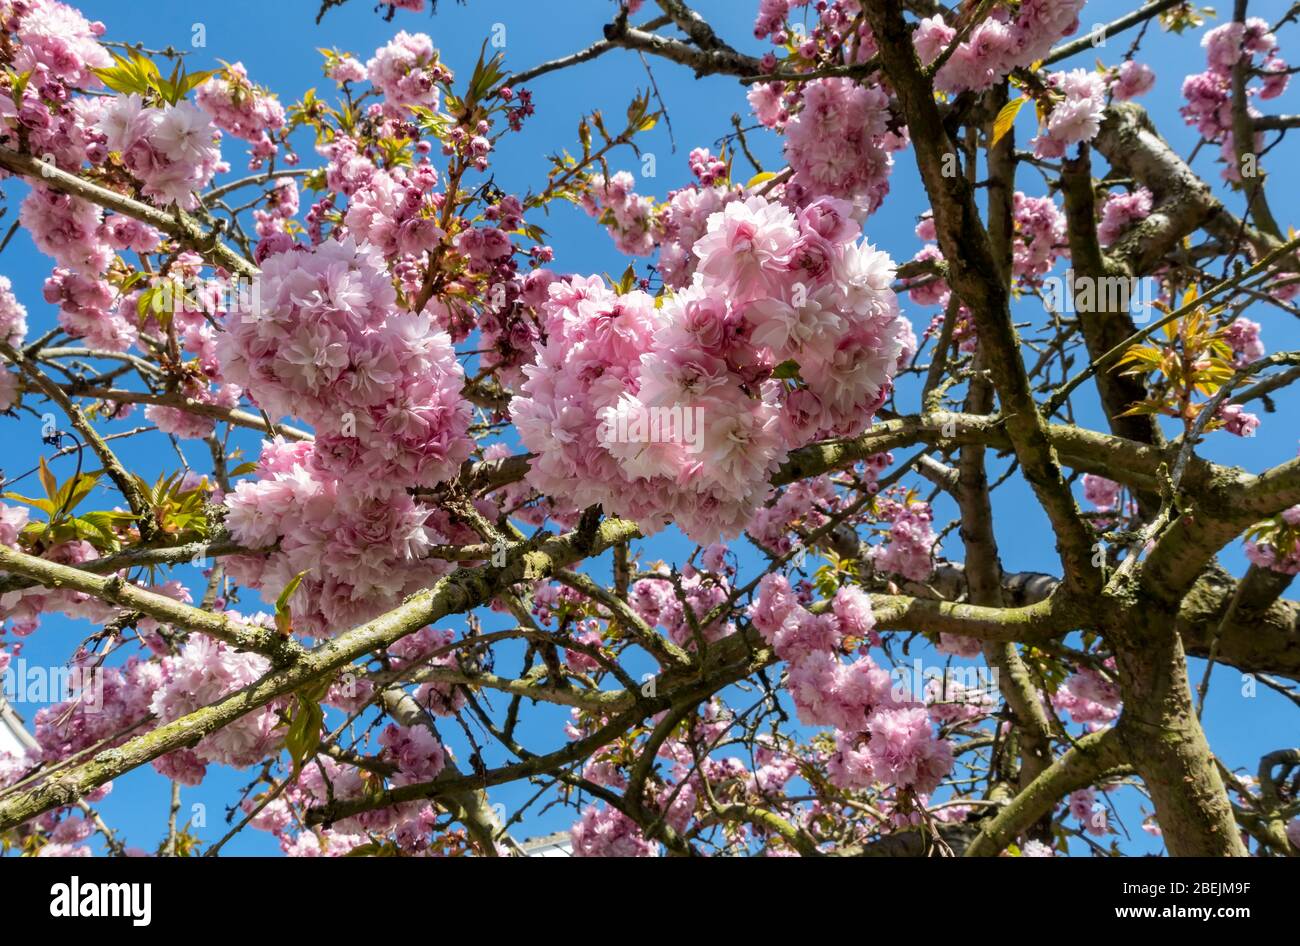 Gros plan de fleurs roses de prunus cerisier fleuries au printemps Angleterre Royaume-Uni Grande-Bretagne Banque D'Images